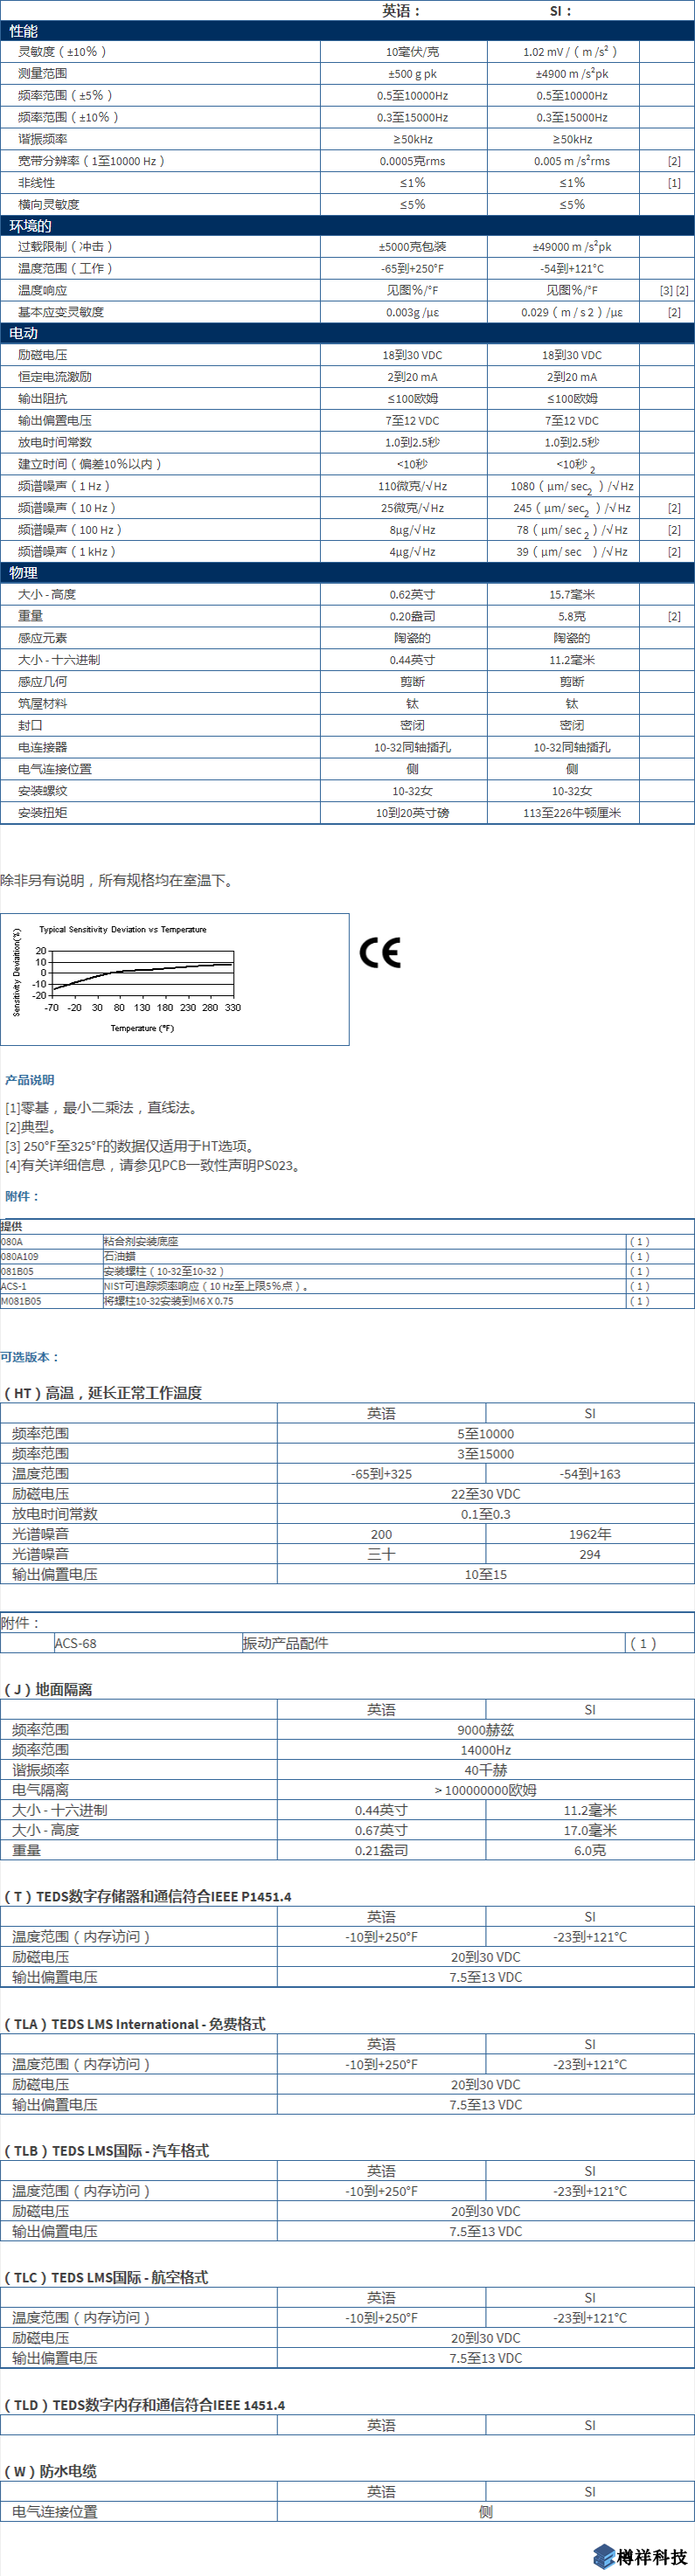 美***进口PCB单轴加速度振动传感器352C03型技术参数